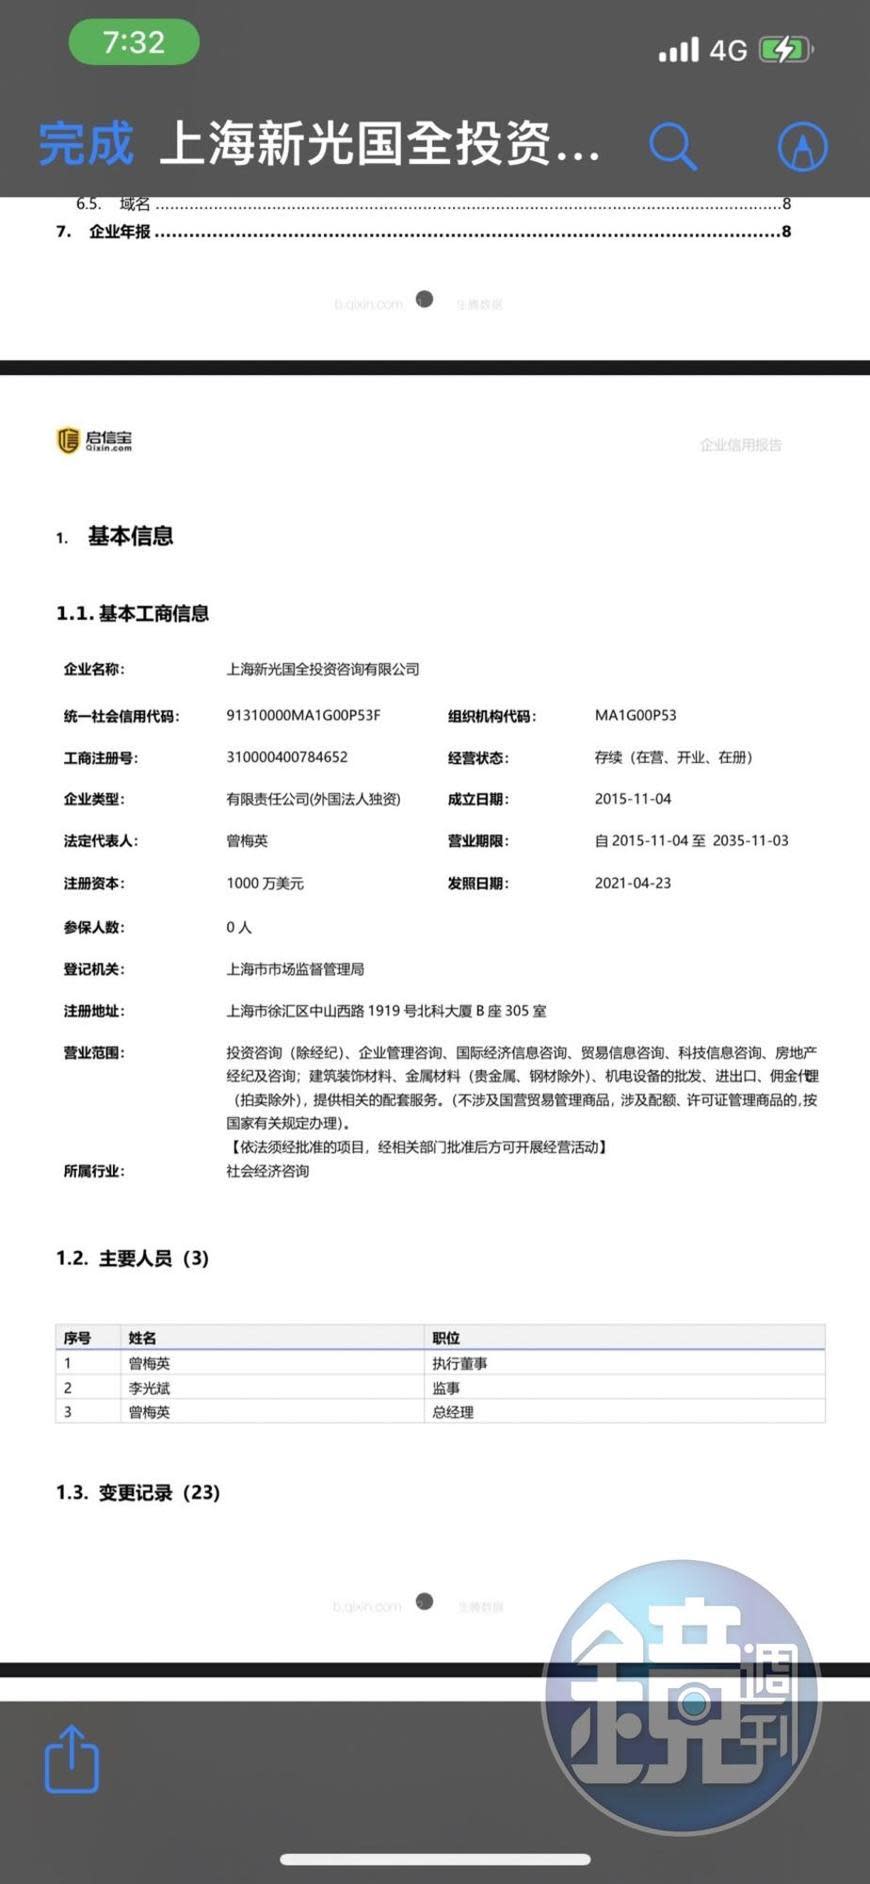 「啟信寶」對上海新光國全投資咨詢公司的聯徵查詢企業信用報告內容。